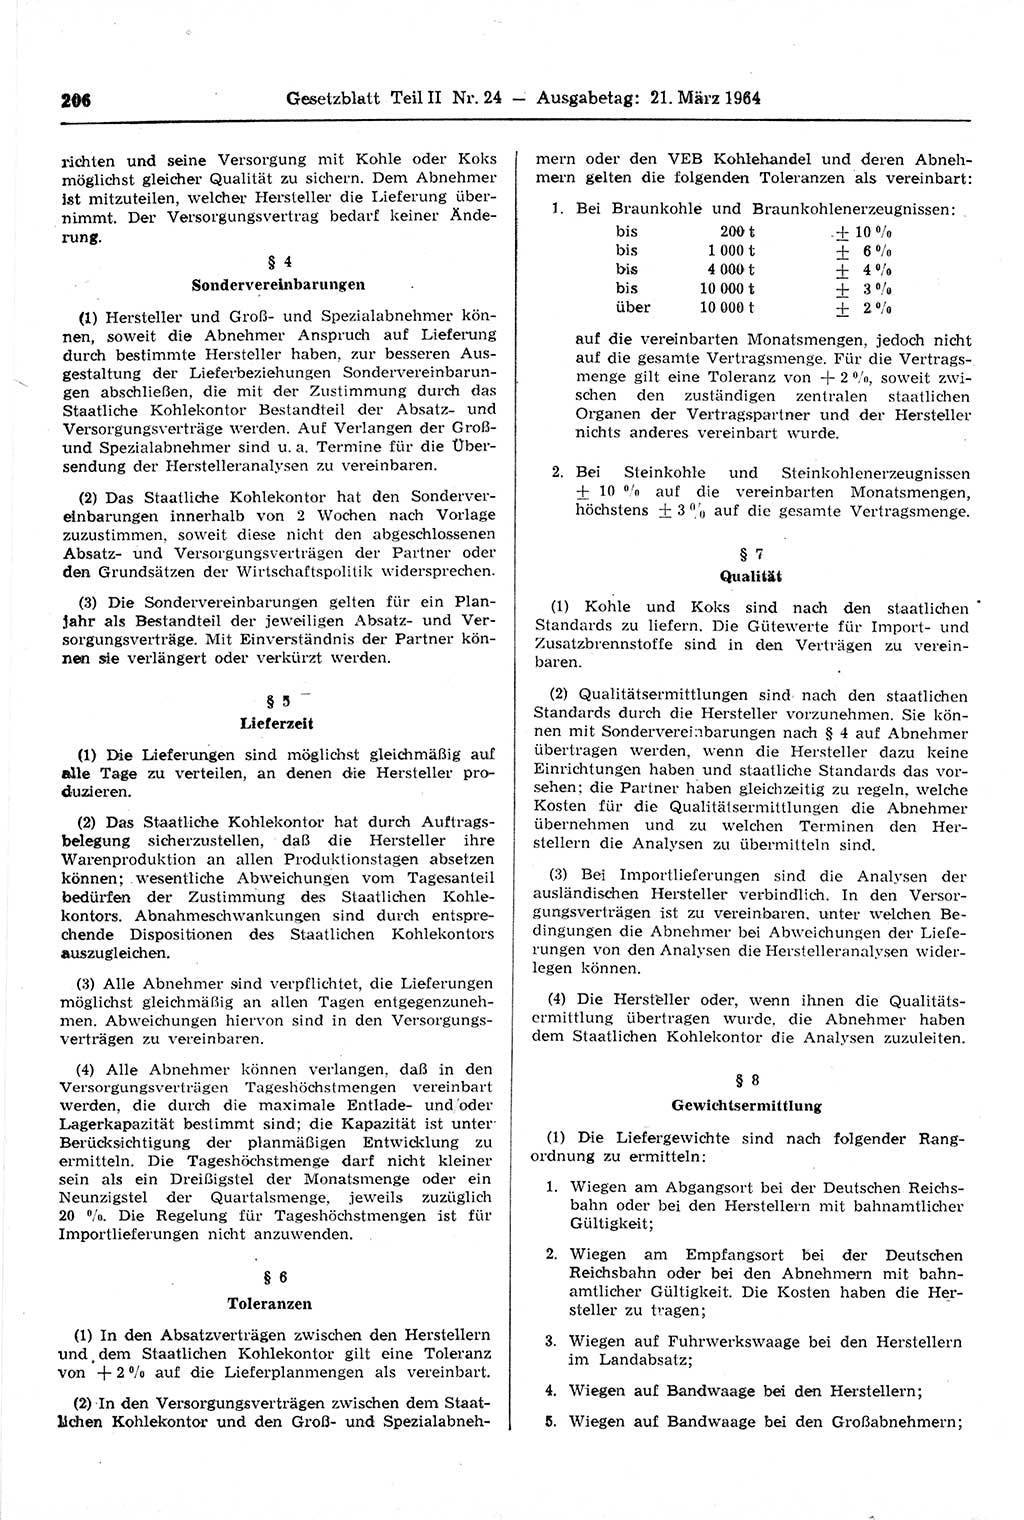 Gesetzblatt (GBl.) der Deutschen Demokratischen Republik (DDR) Teil ⅠⅠ 1964, Seite 206 (GBl. DDR ⅠⅠ 1964, S. 206)